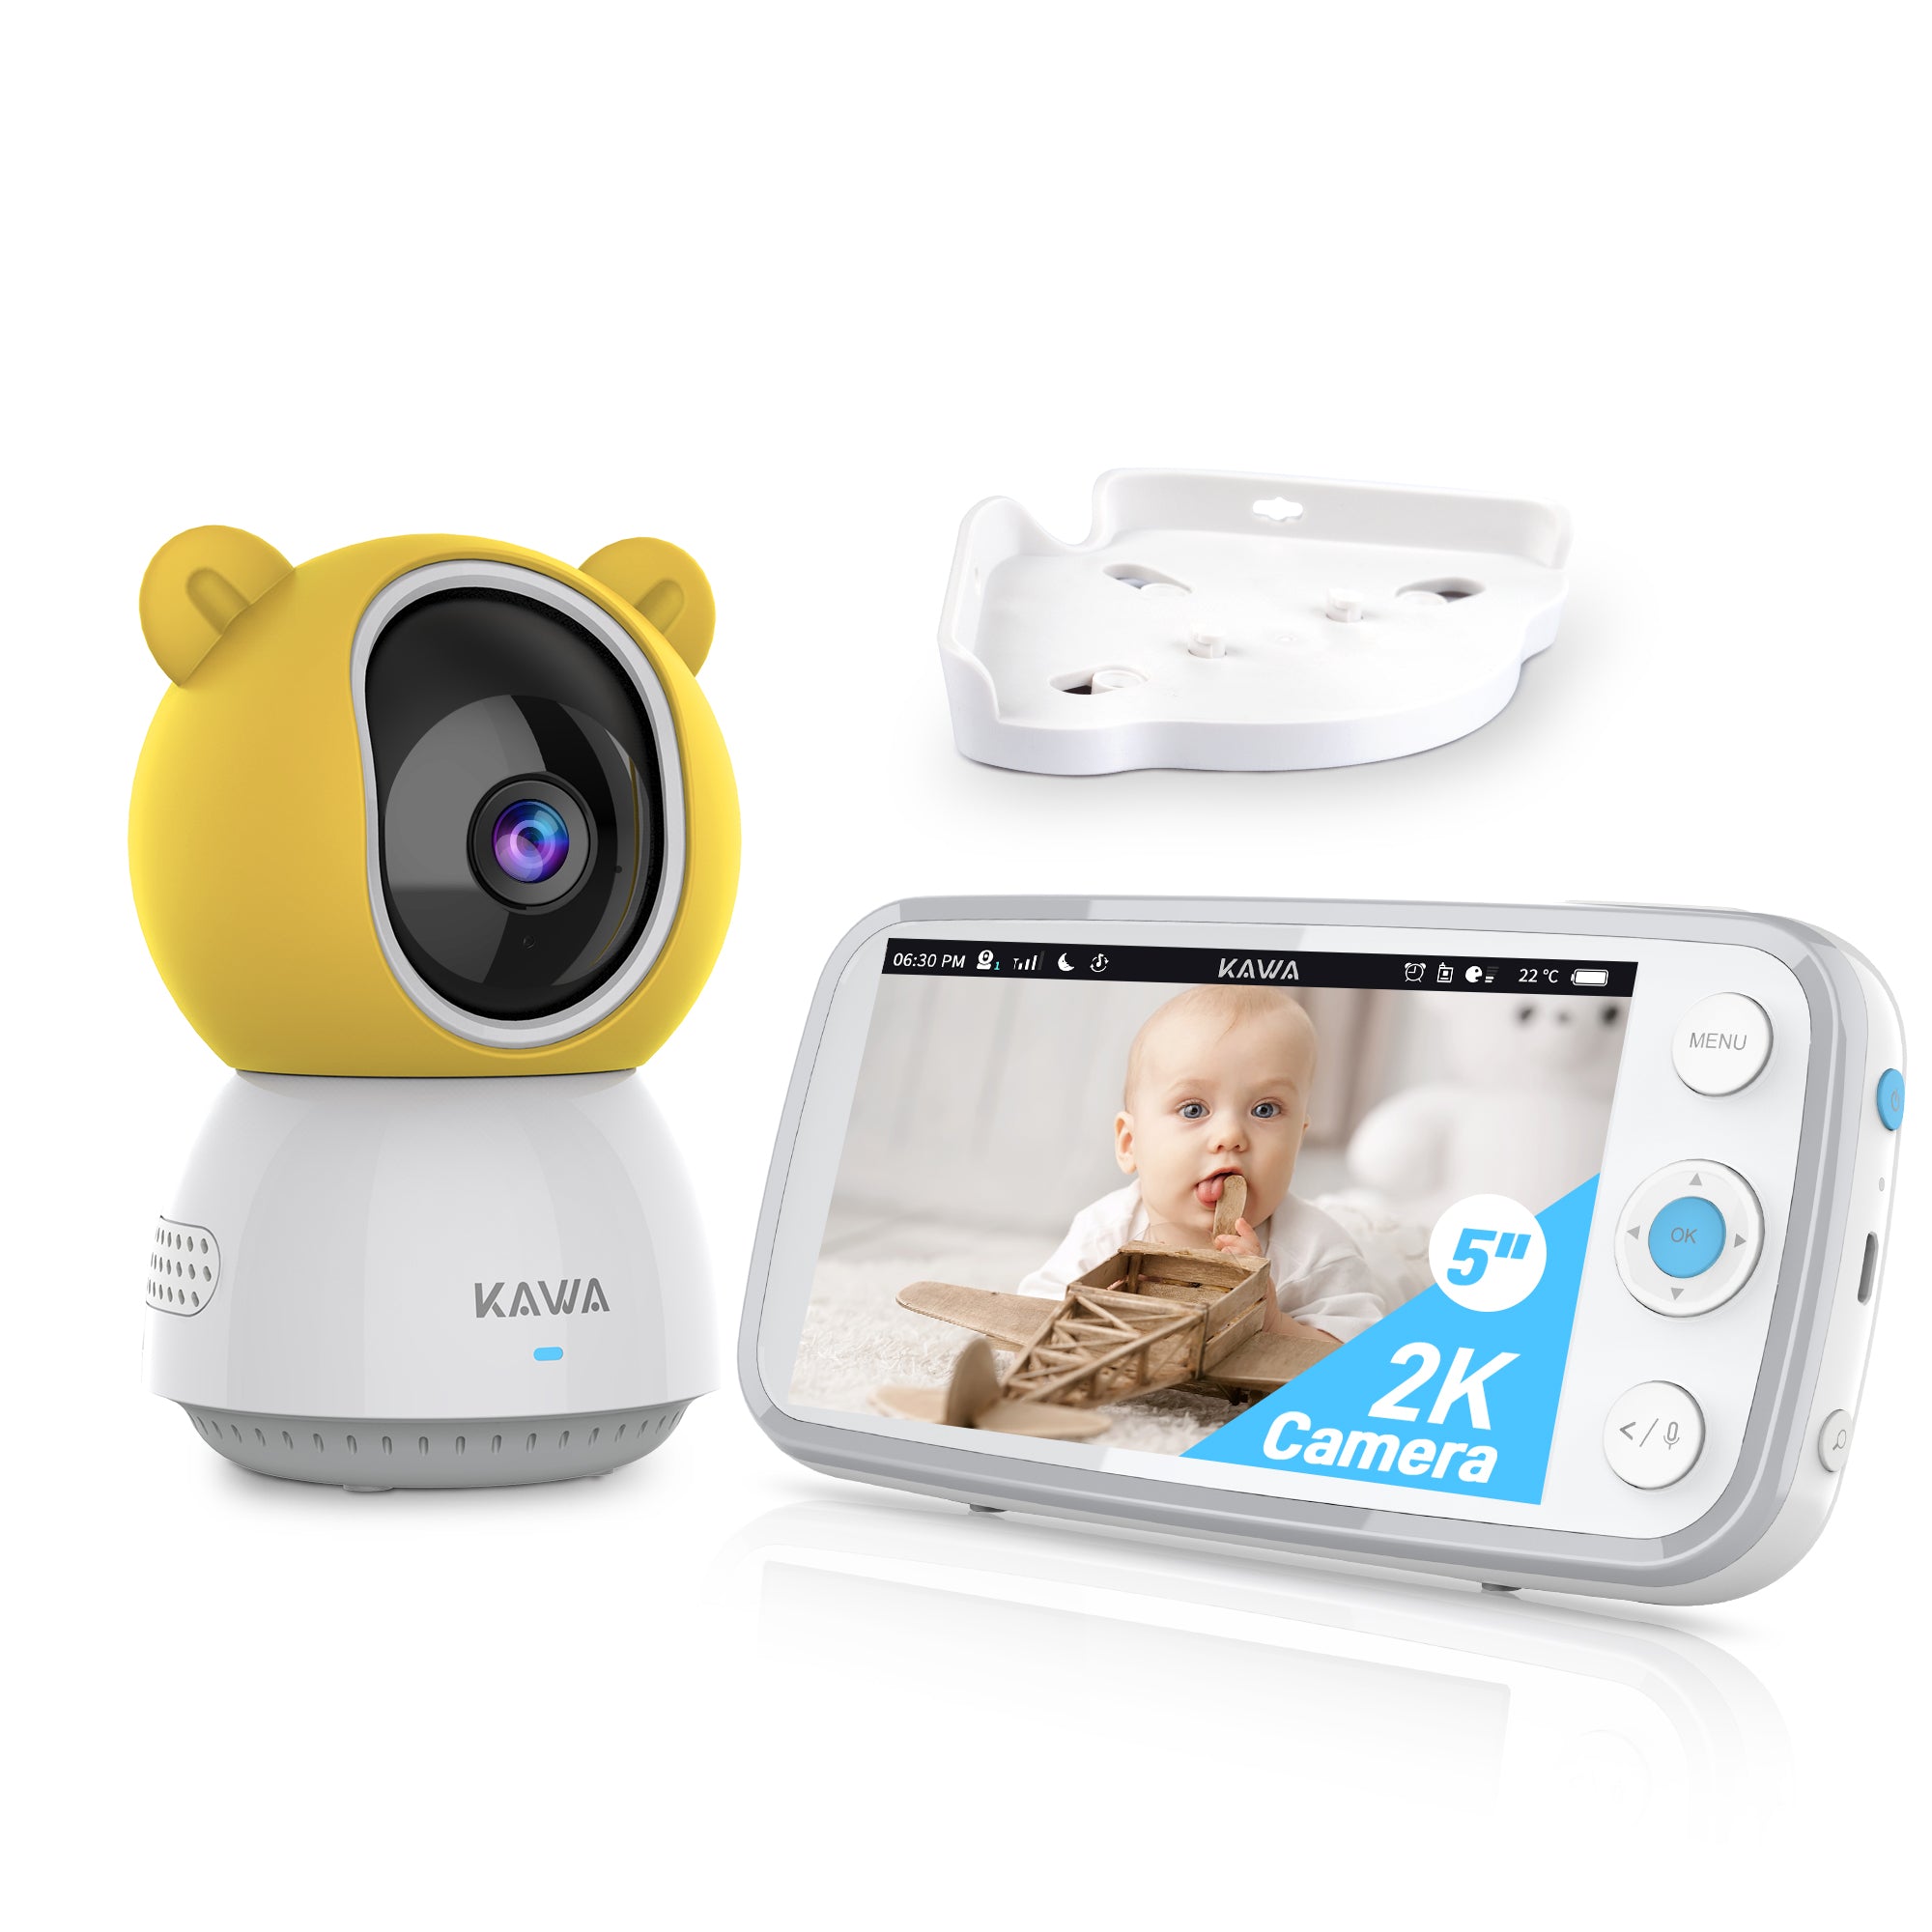 KAWA S7 | Baby Monitor with Camera and Audio - 2K QHD 5